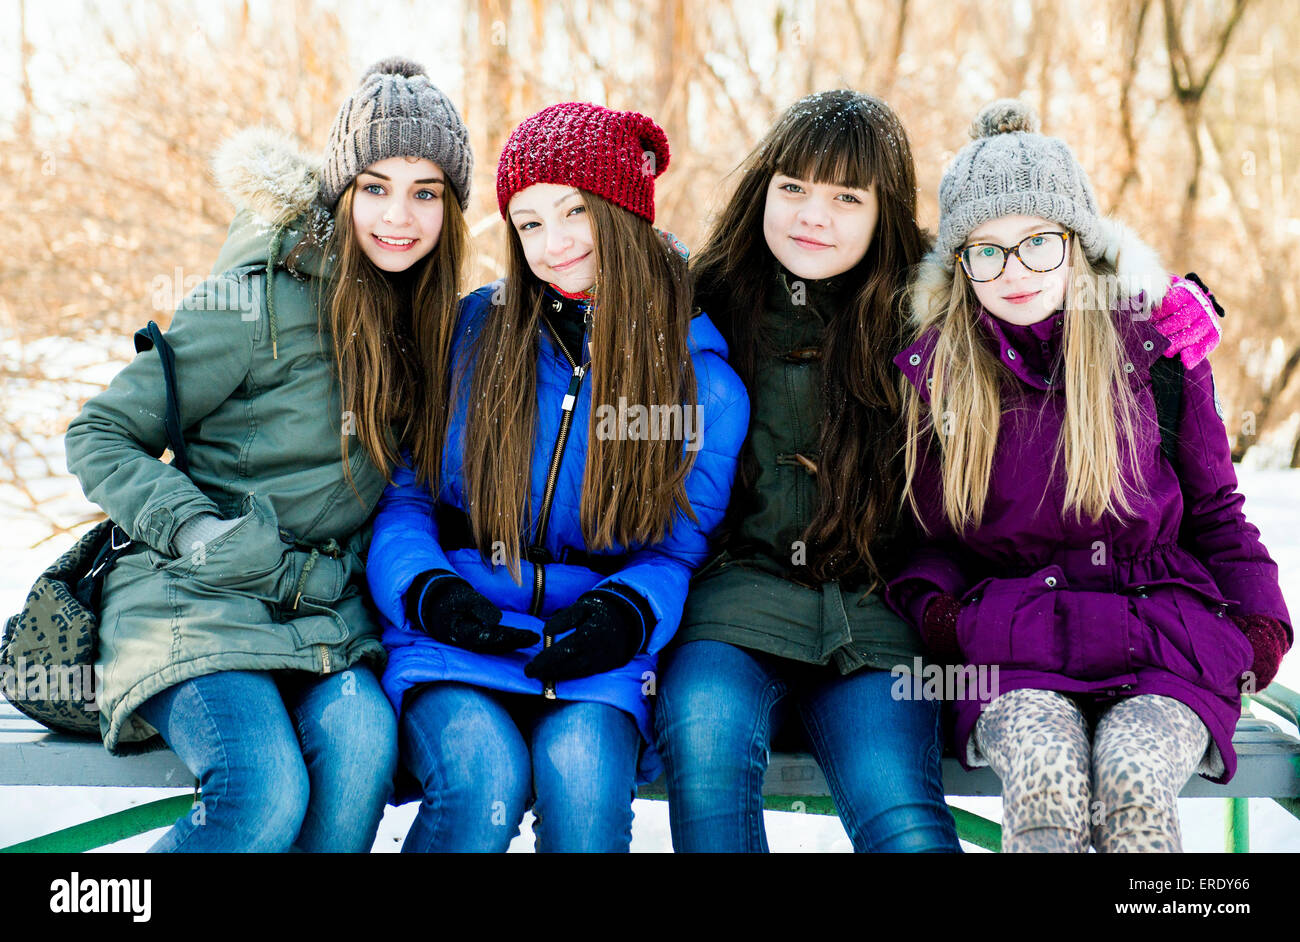 Caucasian girls smiling sur banc en hiver Banque D'Images